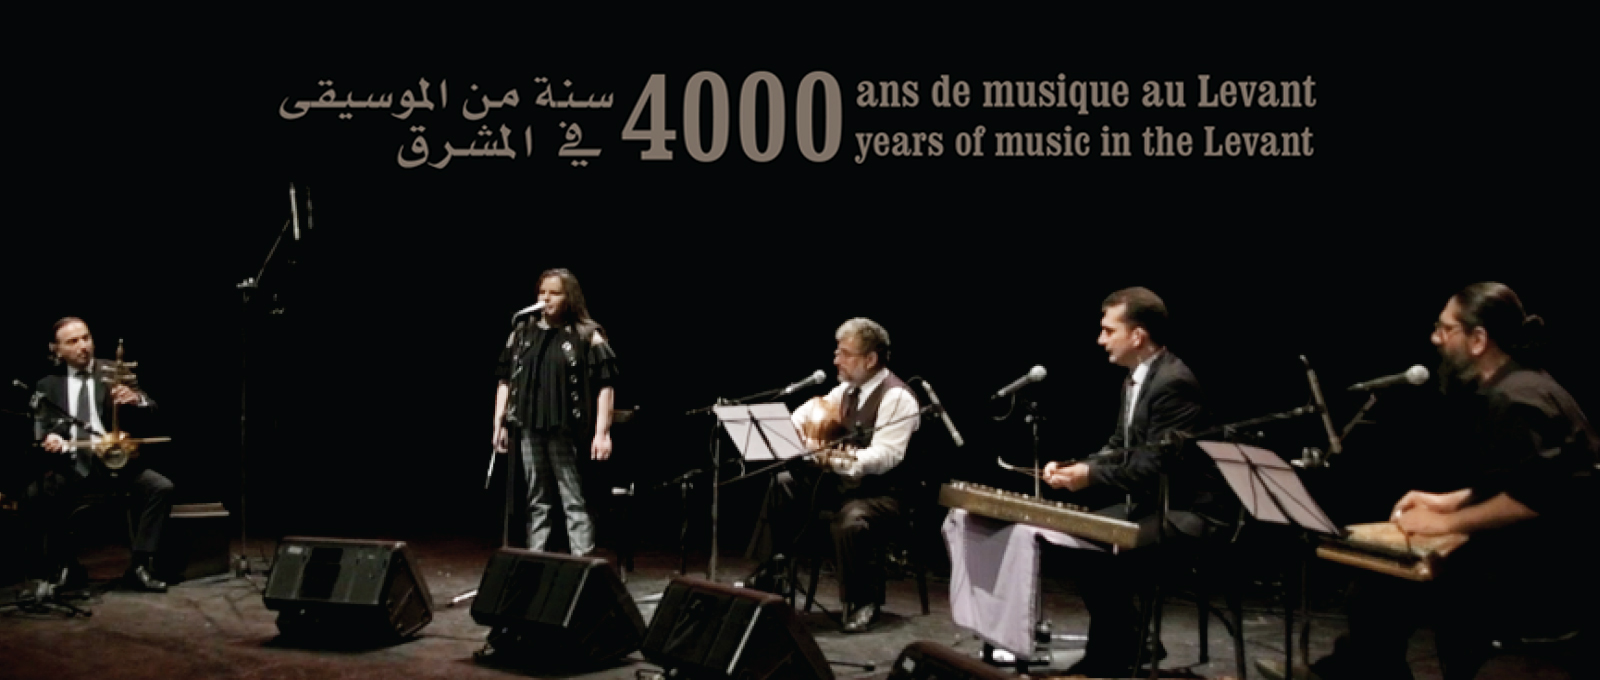 4000 ans de musique au Levant  